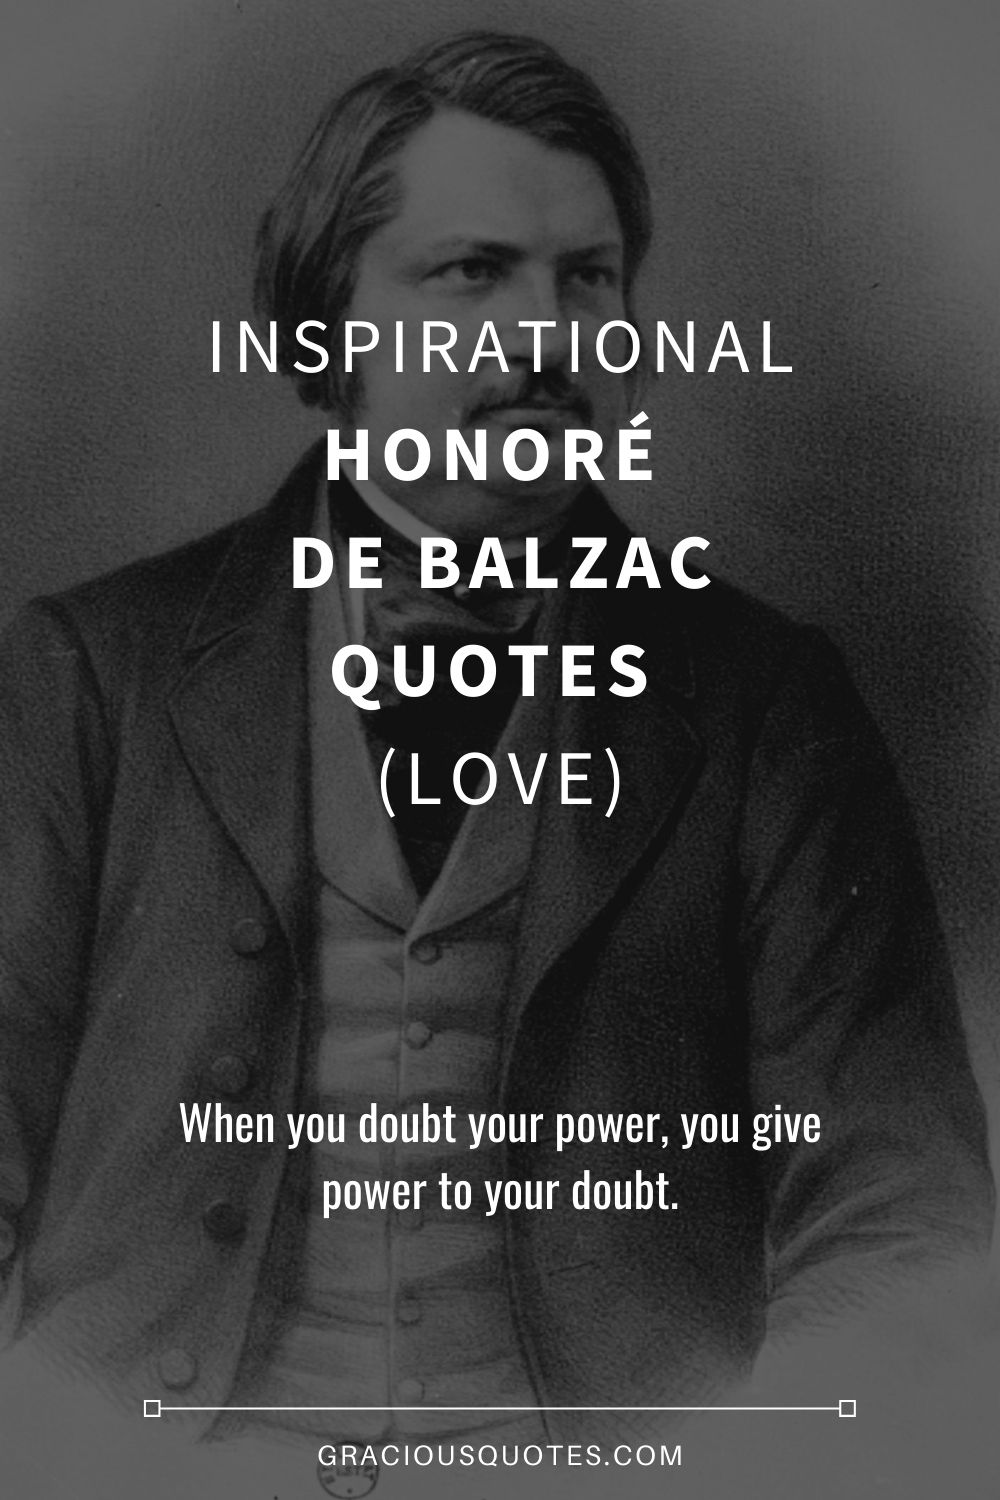 Honore de Balzac - True love is eternal, infinite, and